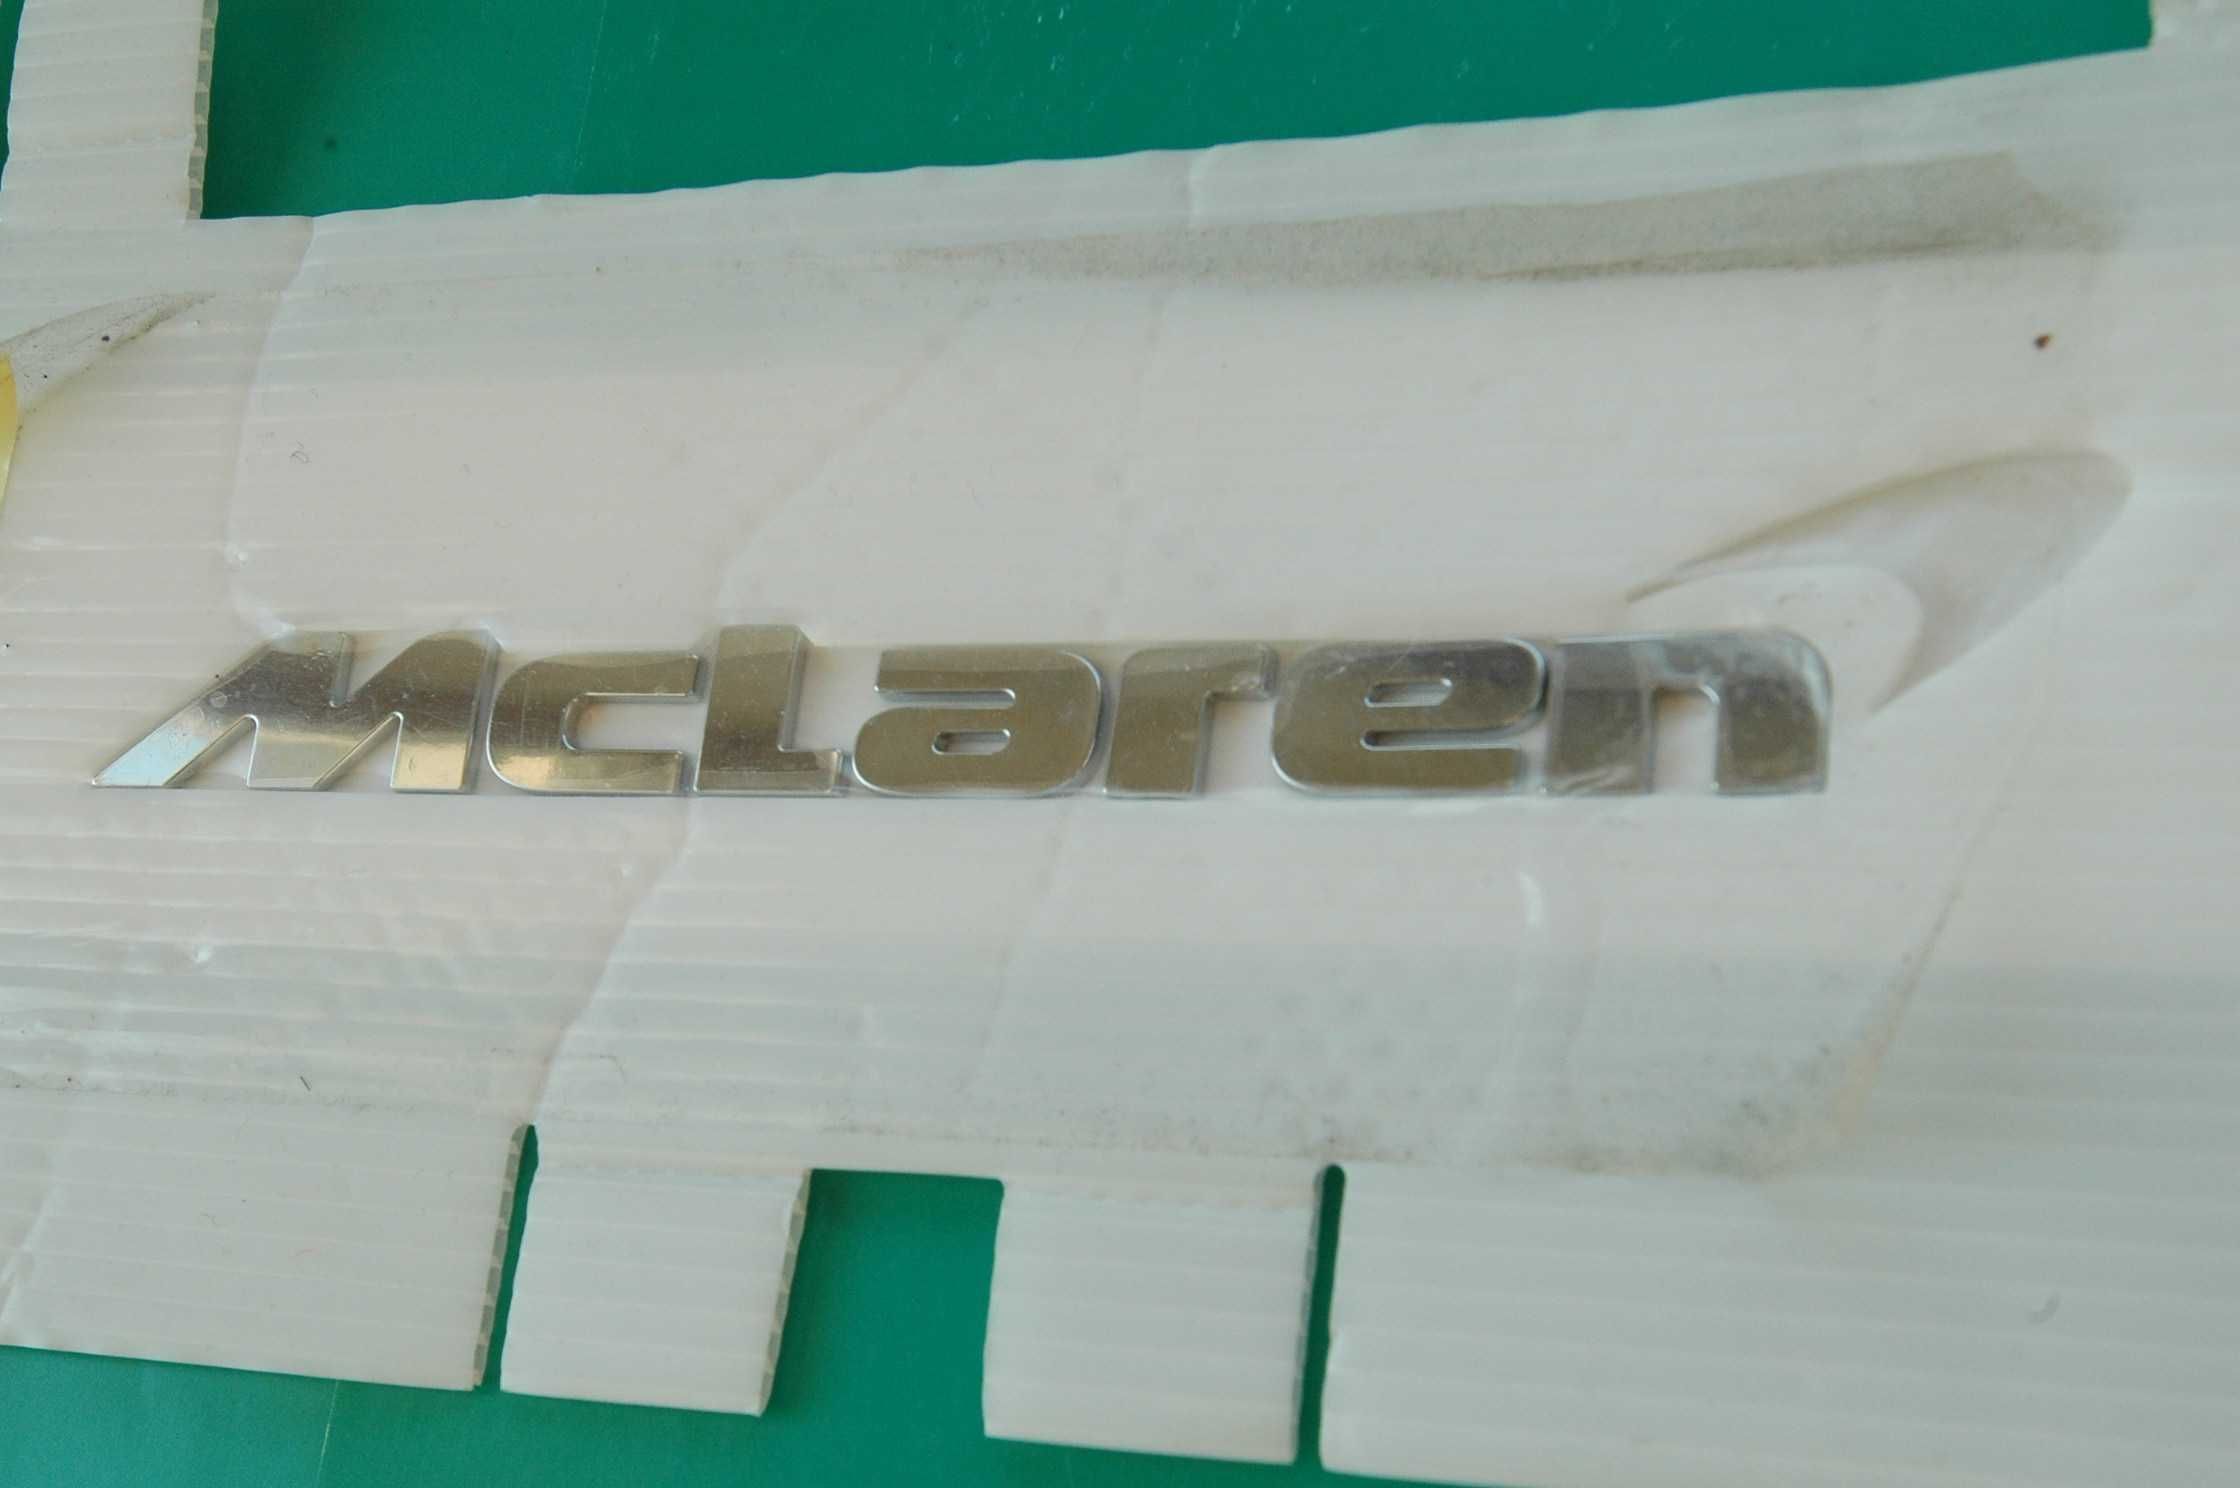 F1 z linii  produkcyjnej  McLaren ten znak jest na pojazdach za milion